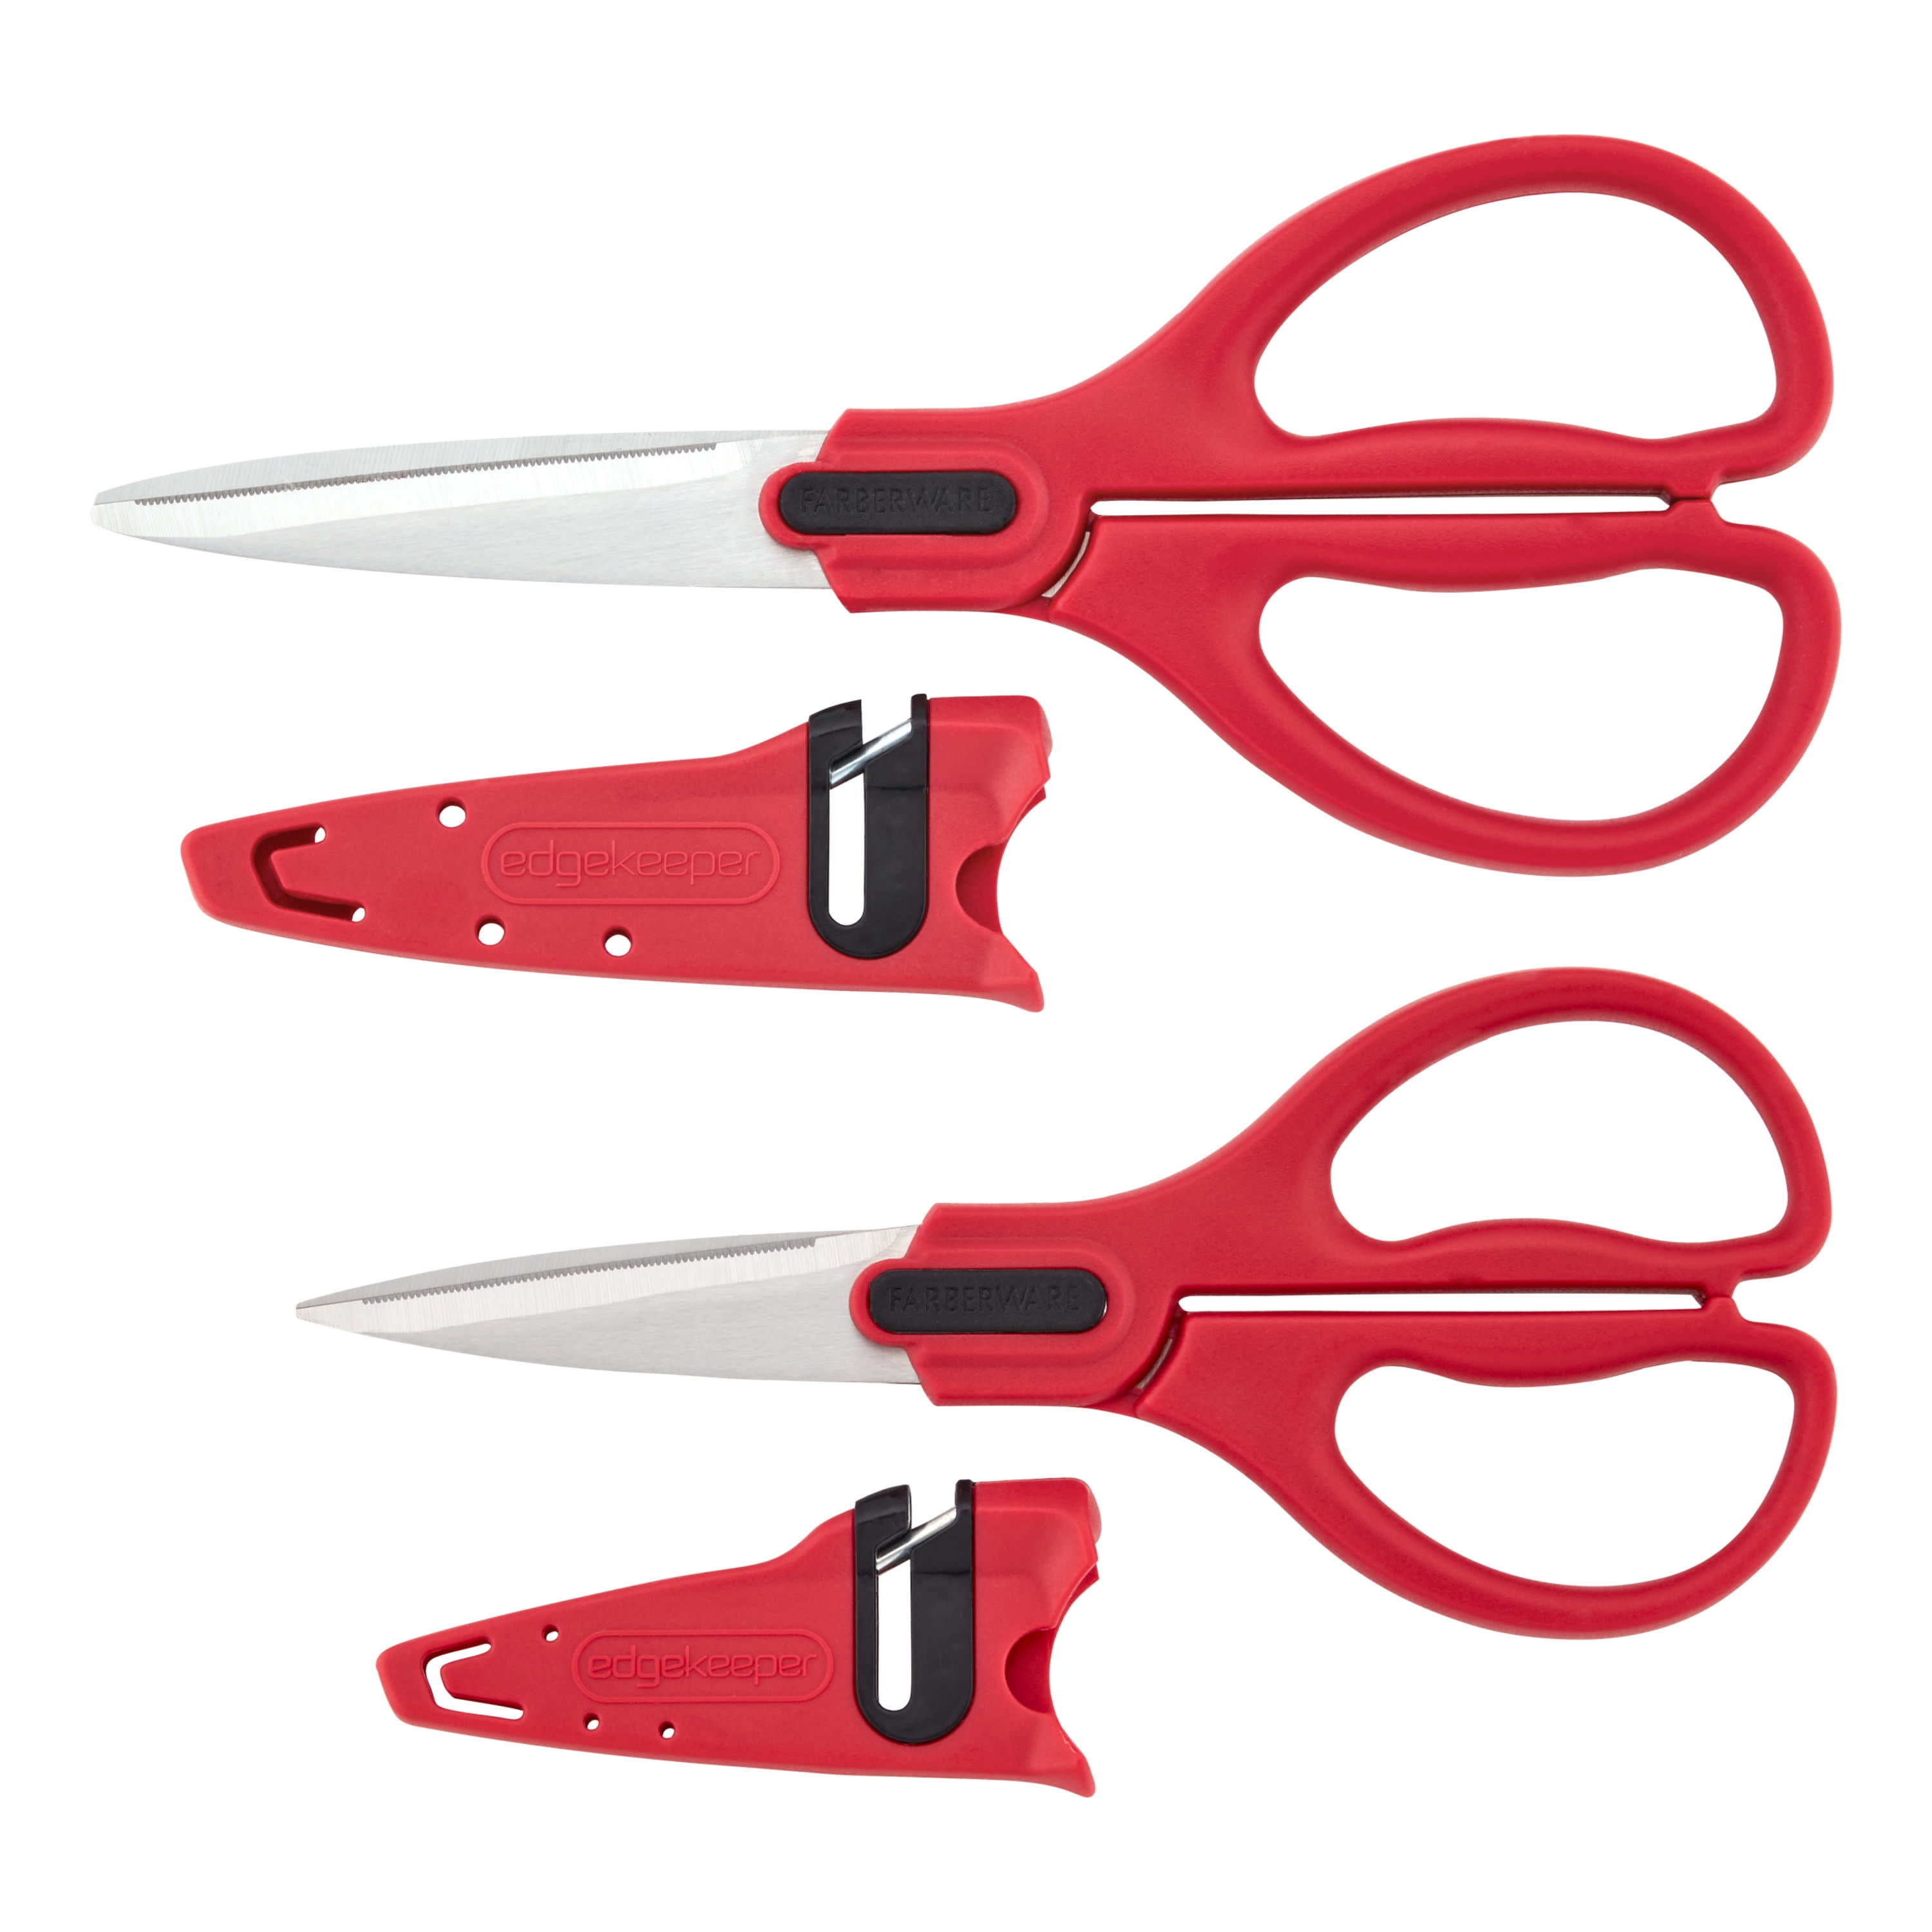 Farberware SmartSharp EdgeKeeper Knife Sharpener w/Sharpness Indicator -  20401044